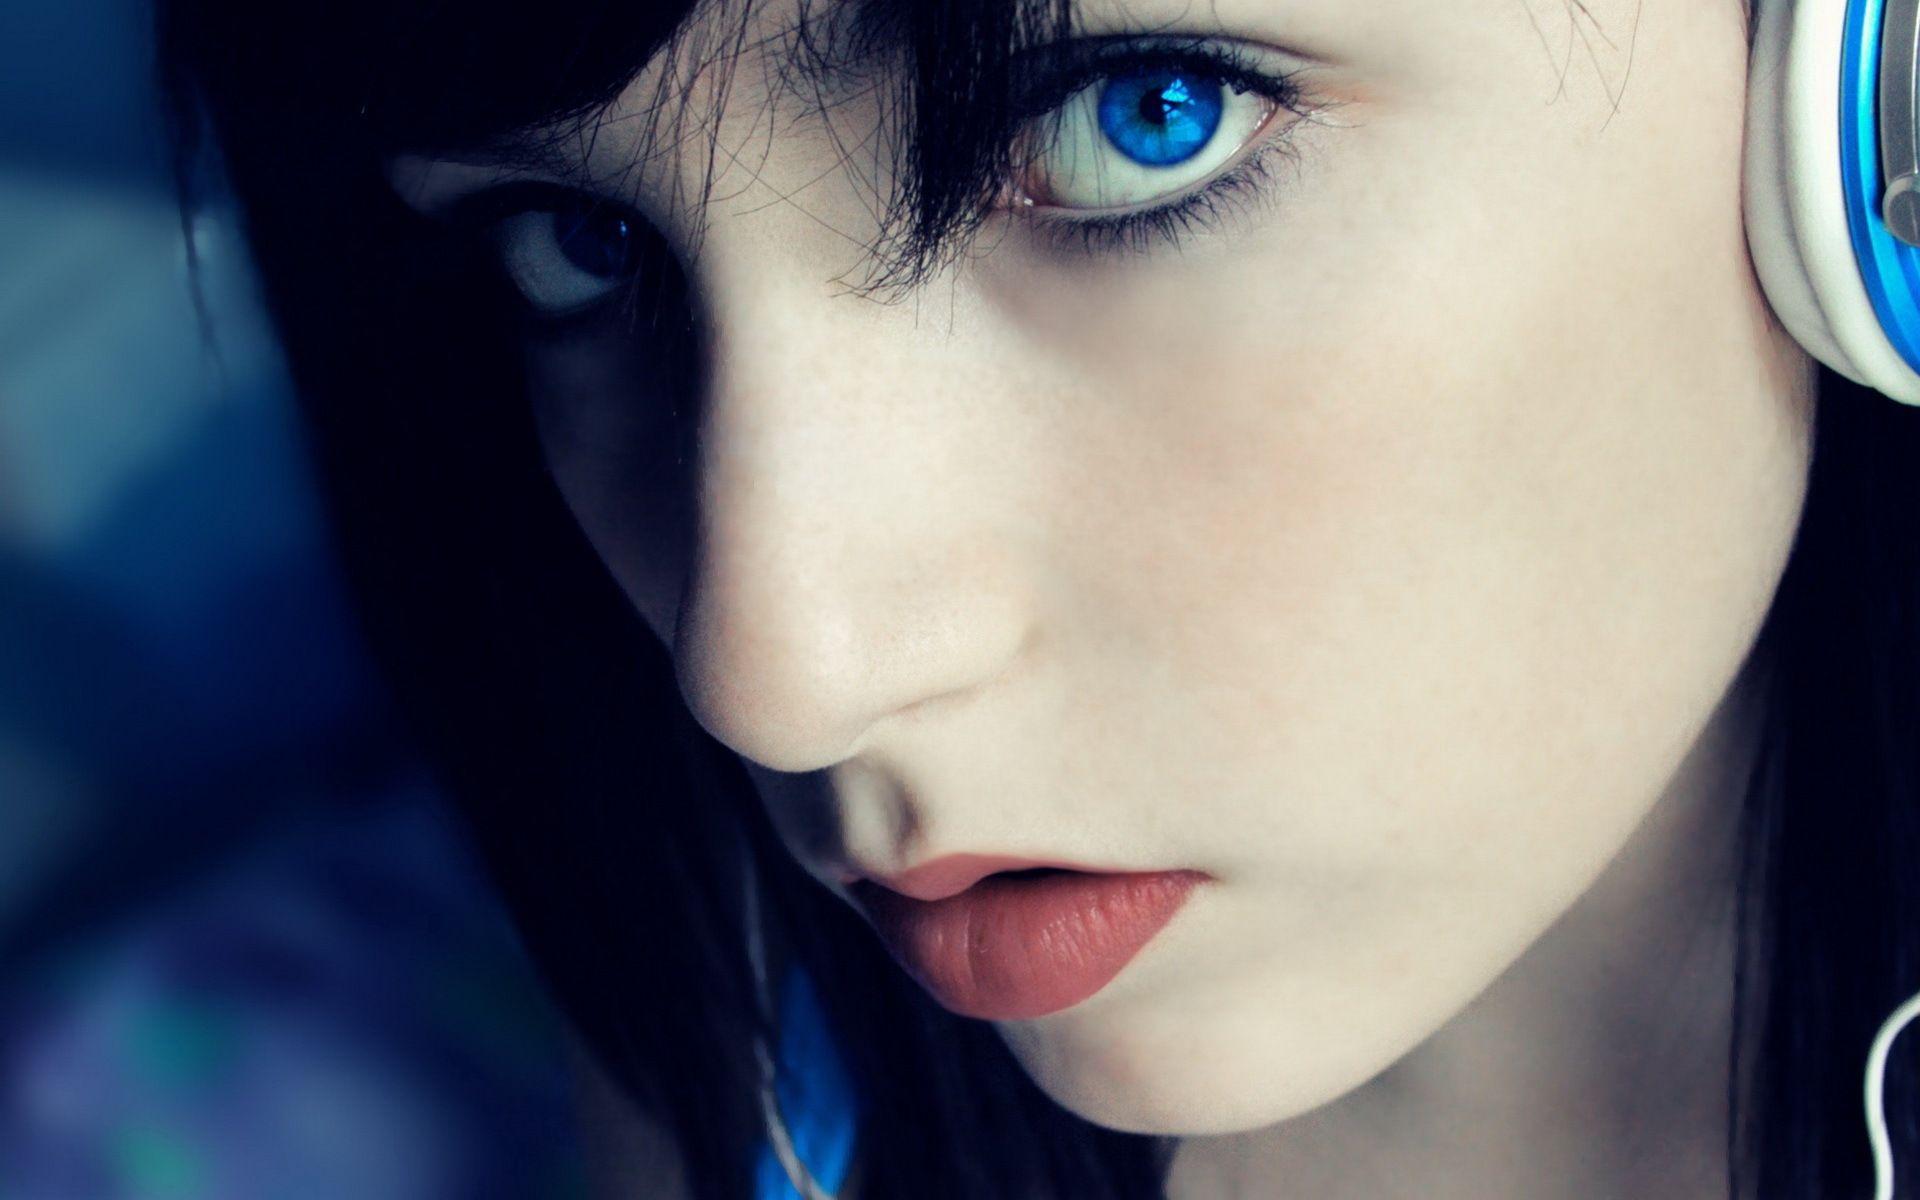 Eyes wallpaper. Eyes wallpaper, Black hair blue eyes, Girl with headphones